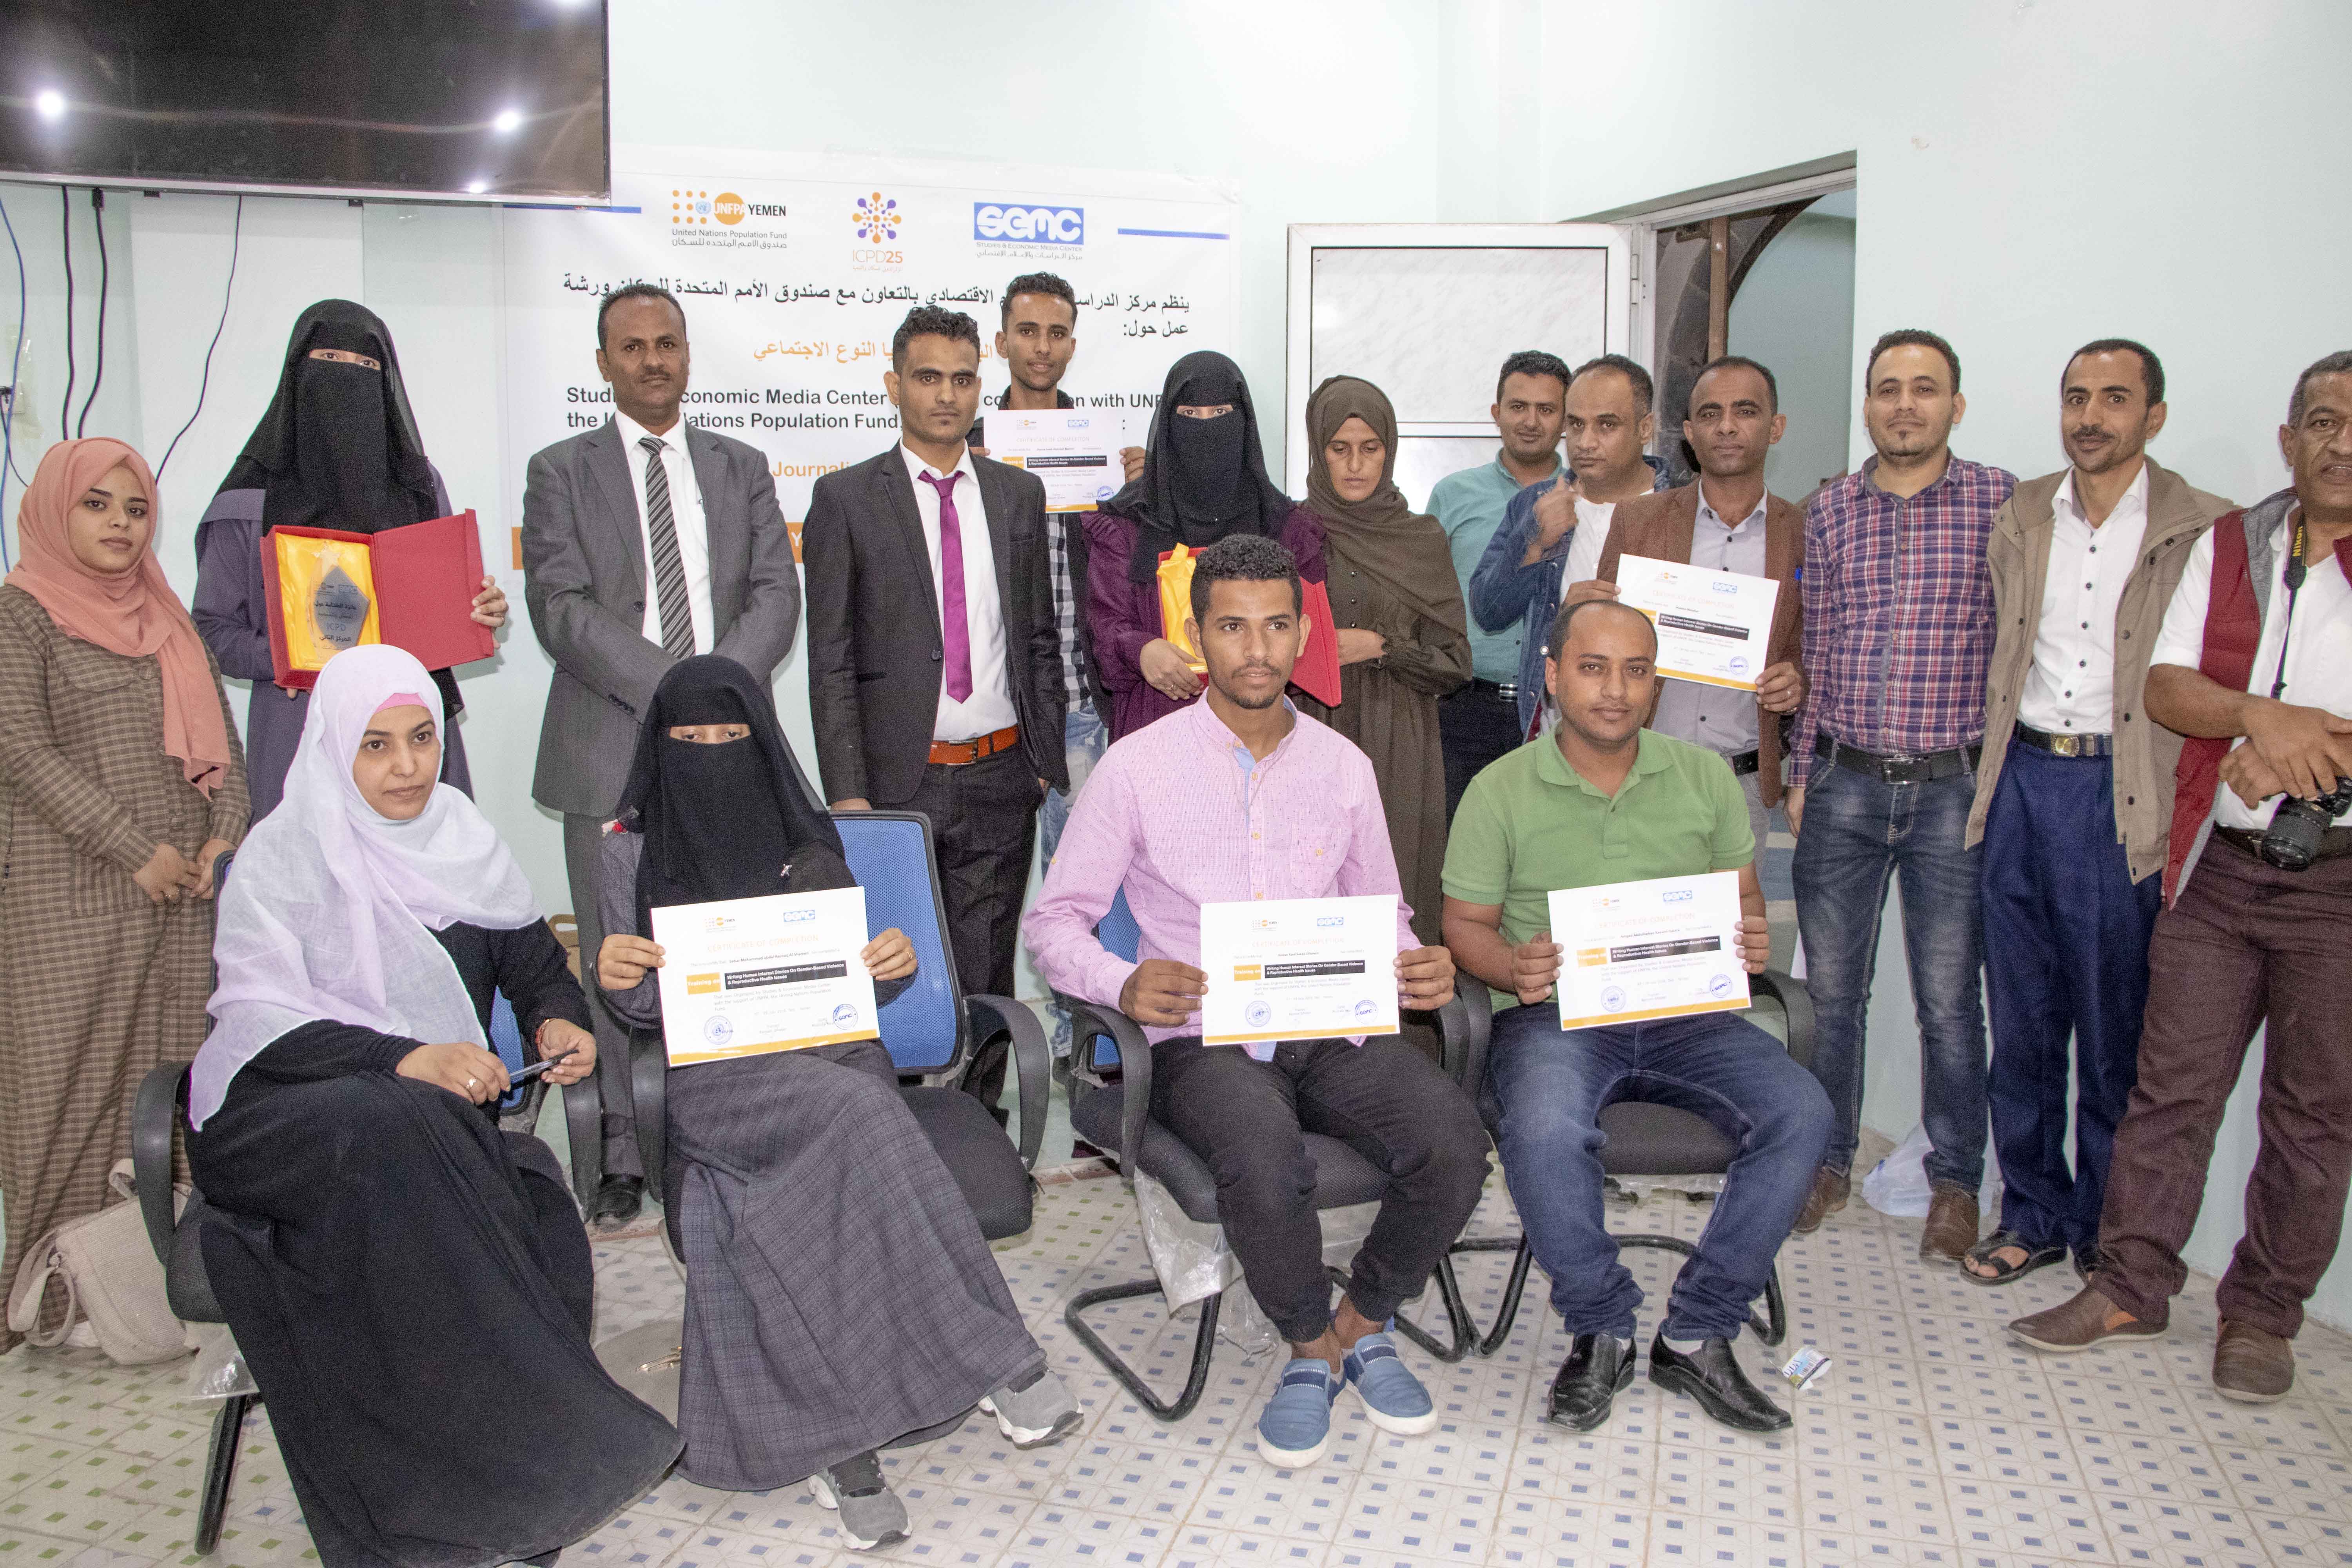 إعلان الفائزين بجائزة الكتابة حول السكان والتنمية : اشهار شبكة صحفيون من أجل السكان والتنمية في اليمن